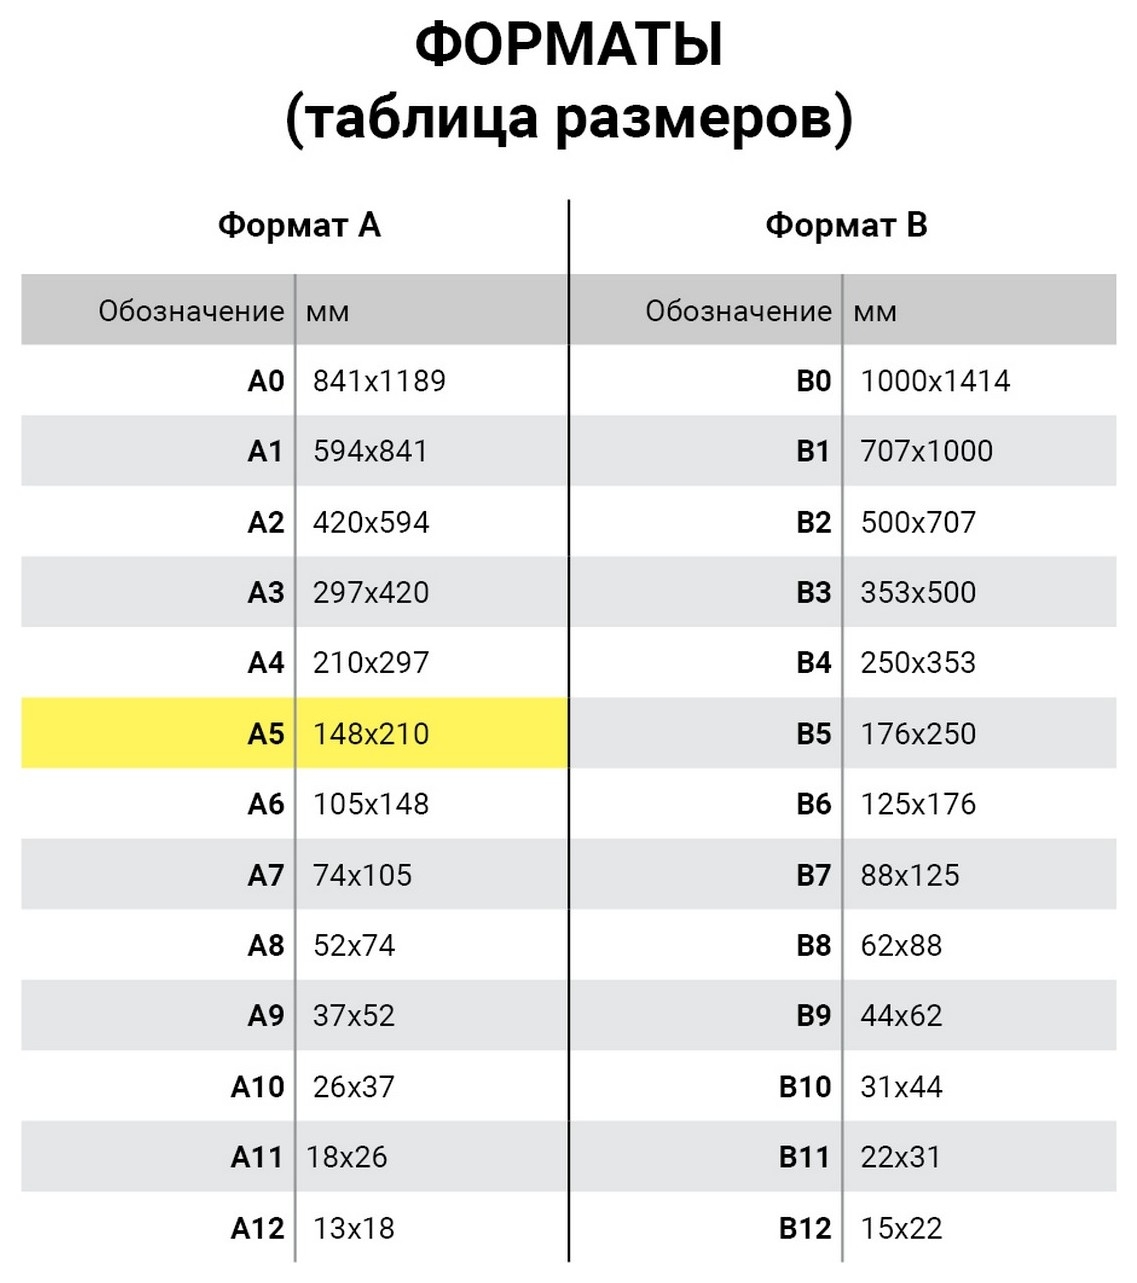 Бланк бухгалтерский типографский Доверенность, А5 (134х192 мм), склейка 100 шт., 130013